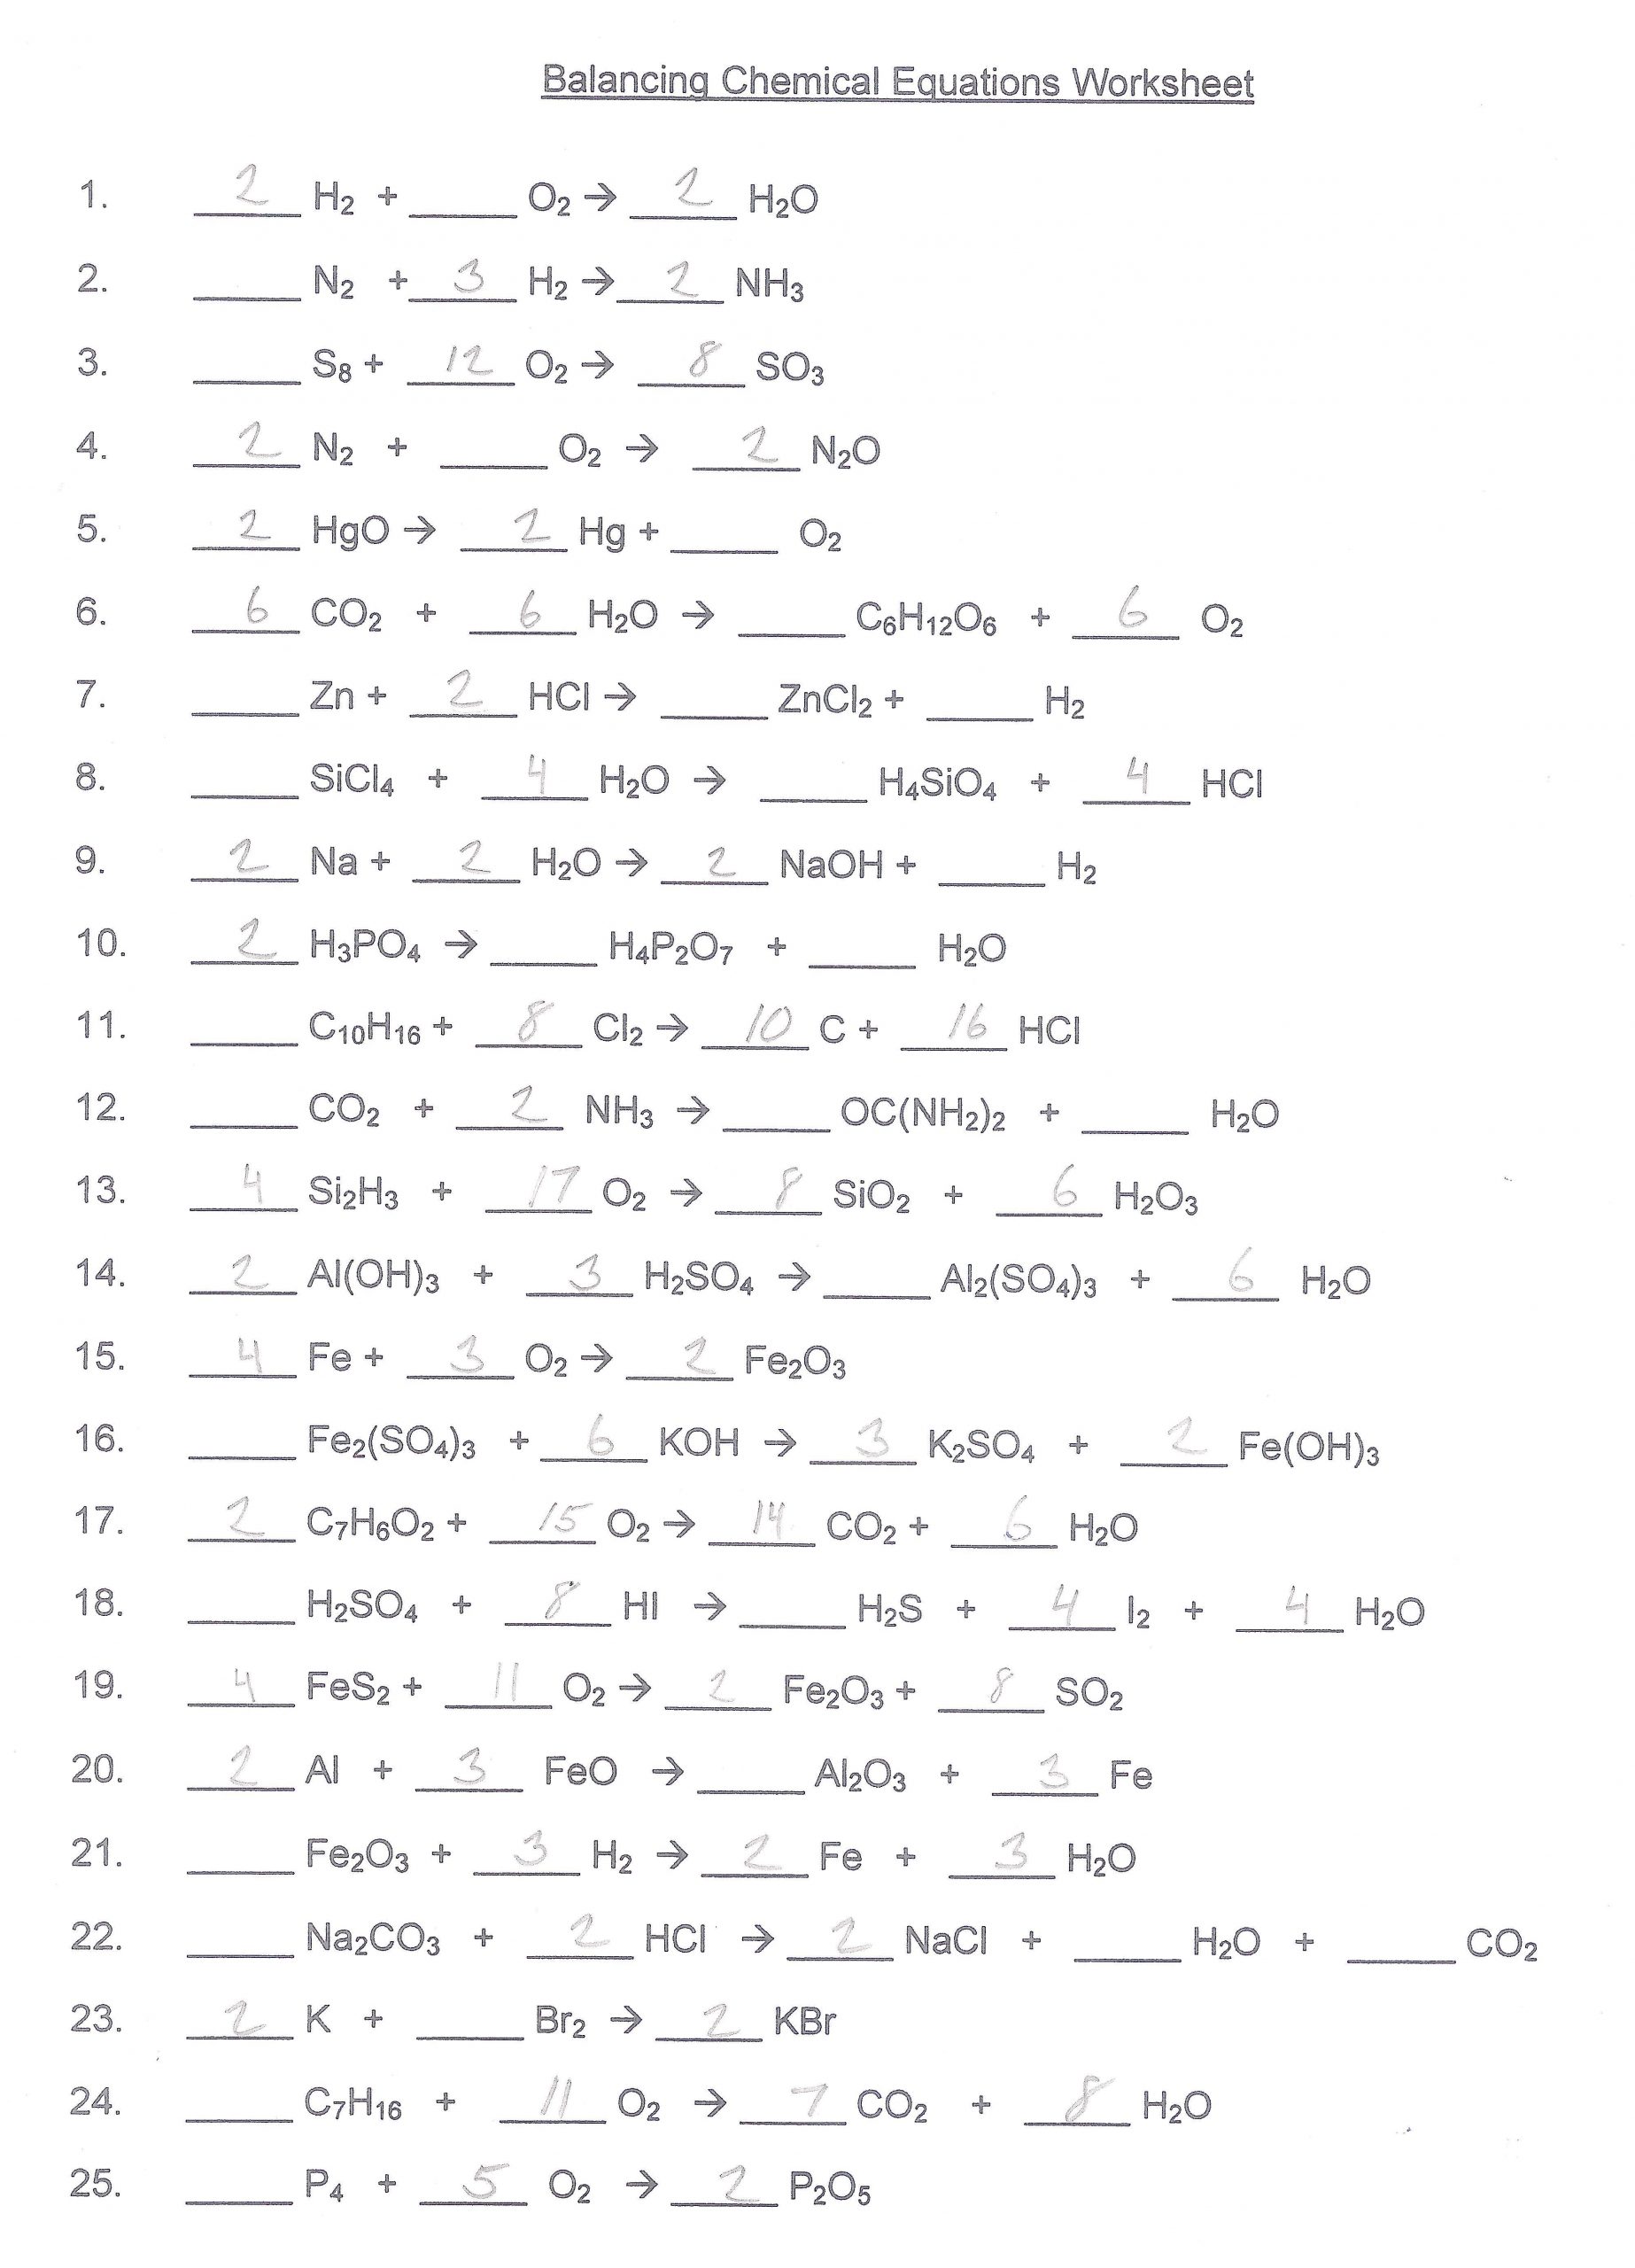 Balancing Equations Worksheet Answers Balancing Chemical Equations Worksheet Answer Key